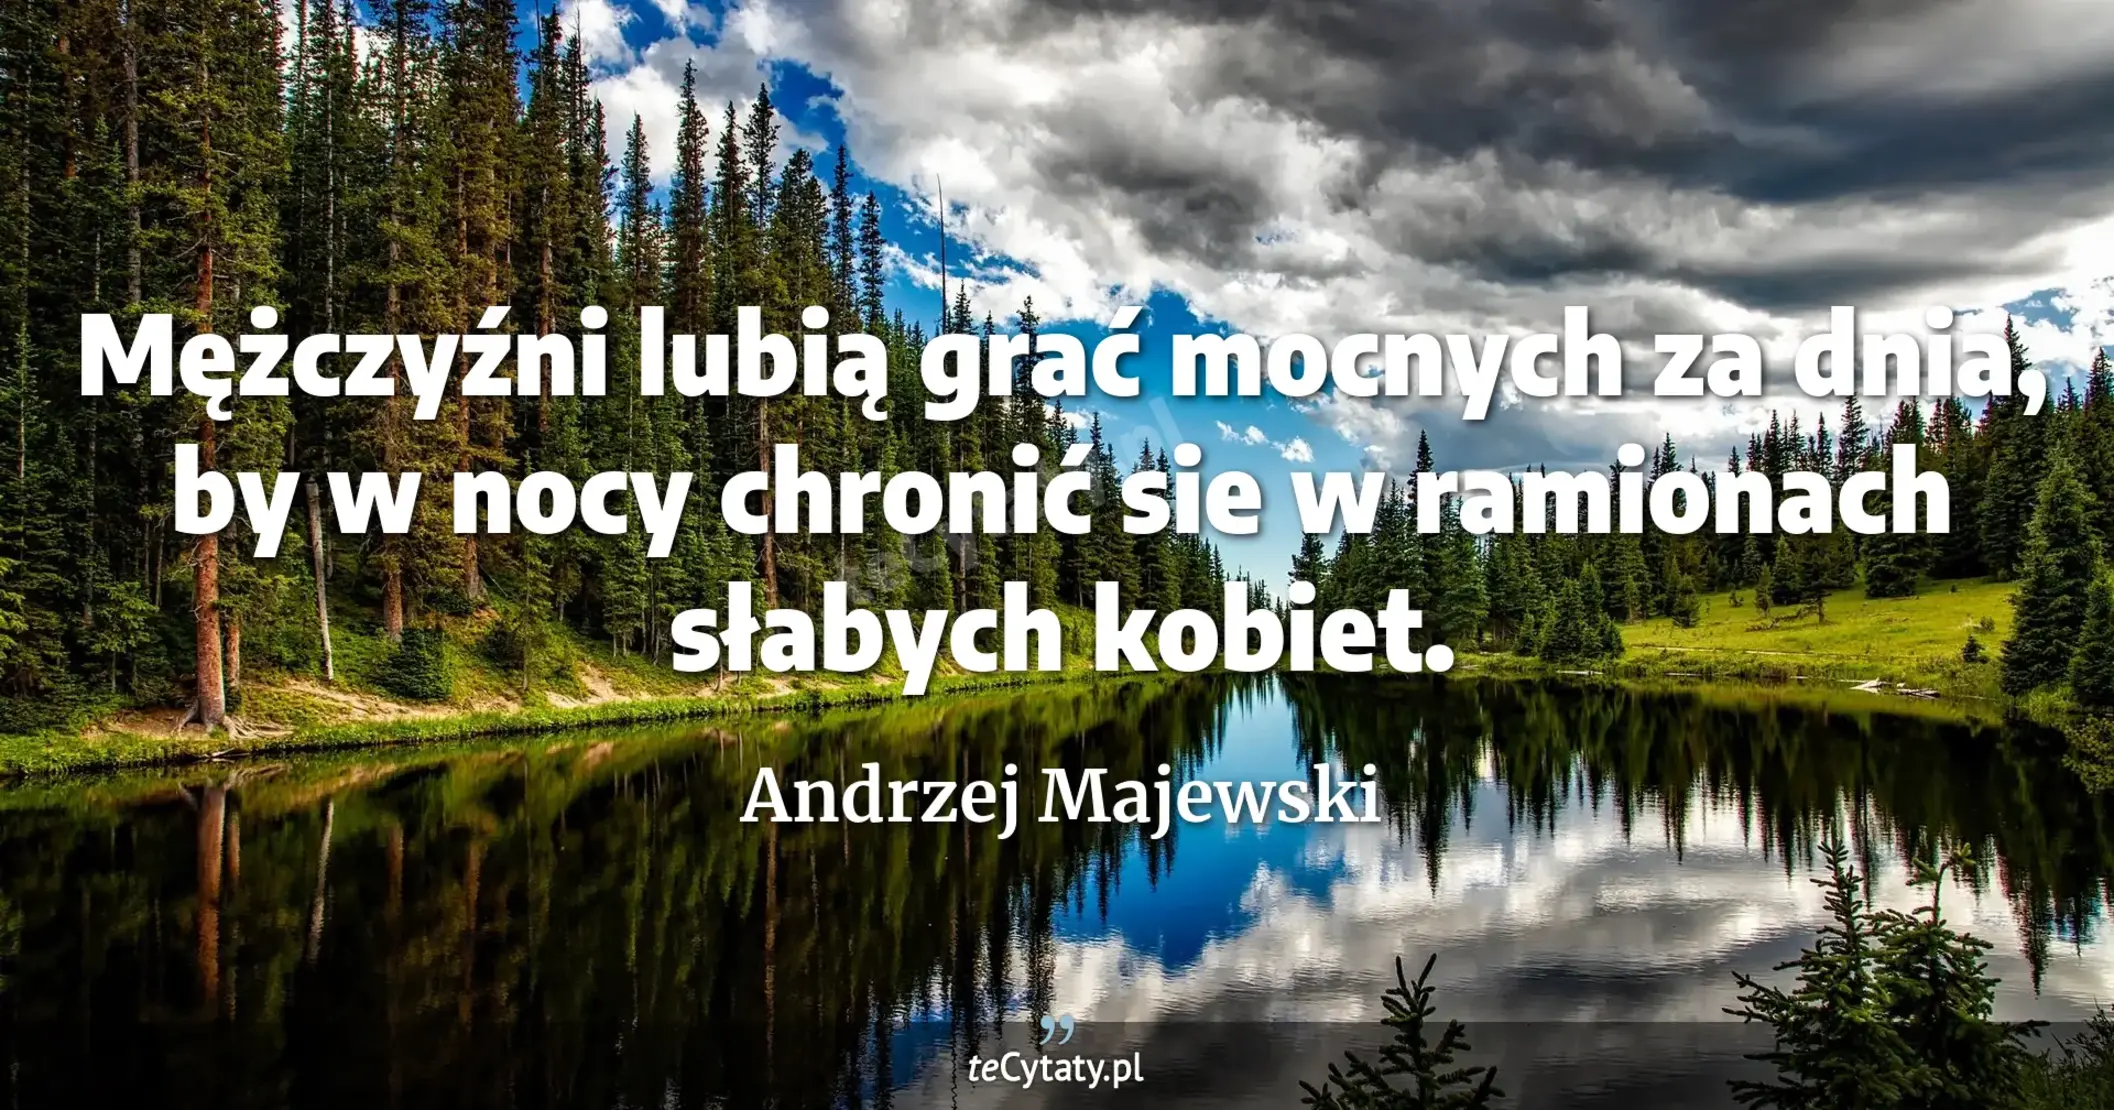 Mężczyźni lubią grać mocnych za dnia, by w nocy chronić sie w ramionach słabych kobiet. - Andrzej Majewski